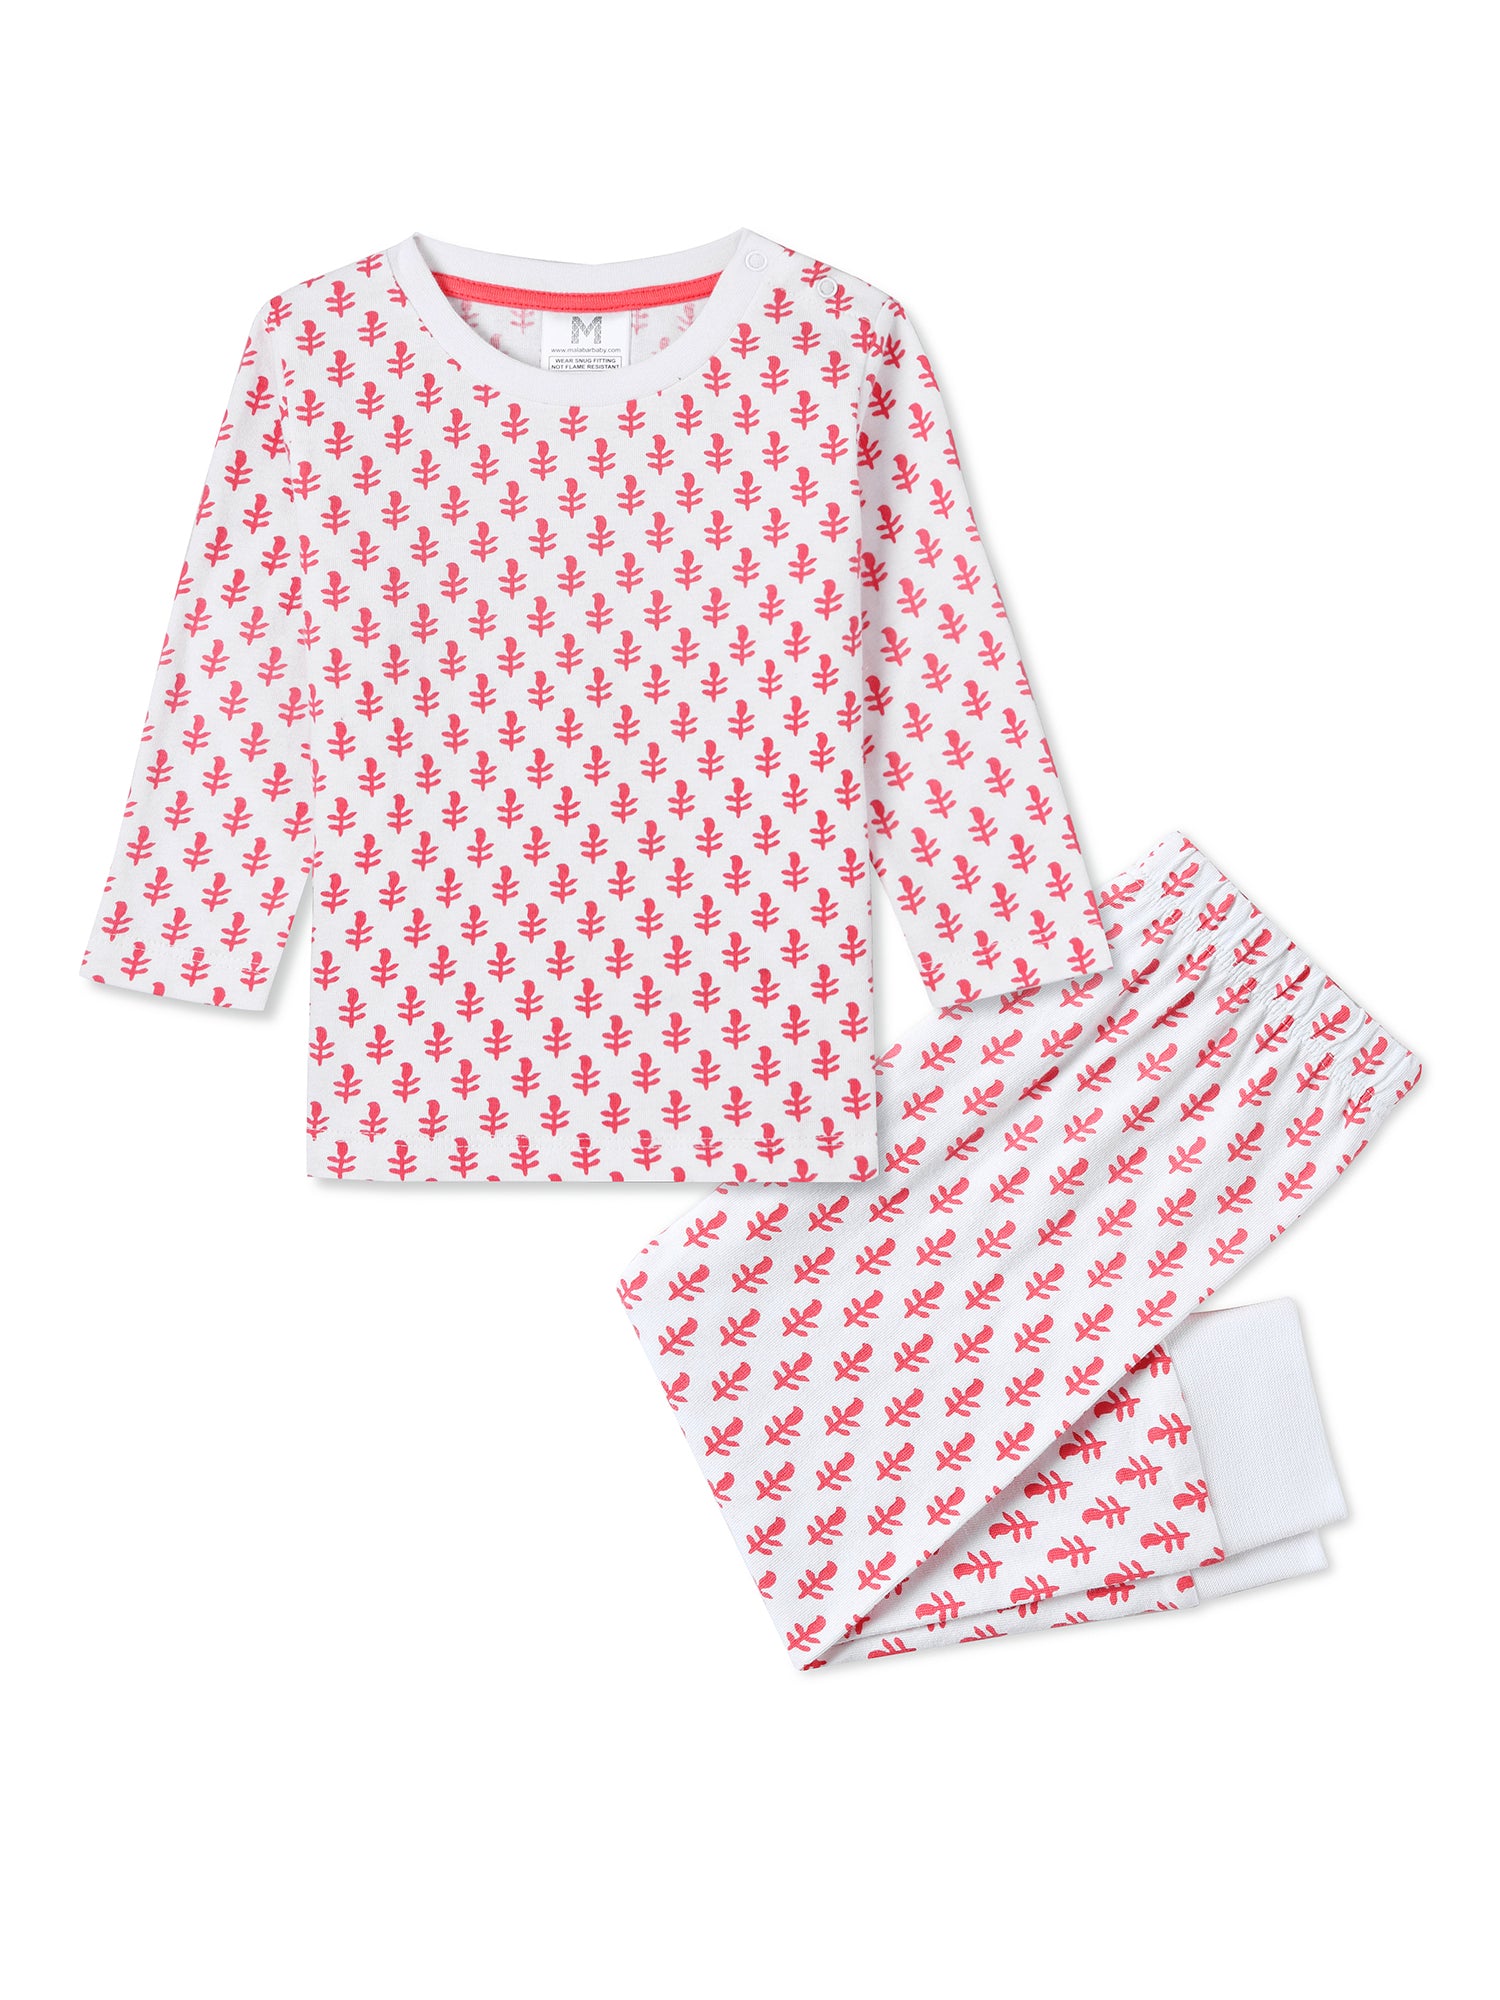 Toddler & Big Kid Cotton Knit PJ Set (Pink City)